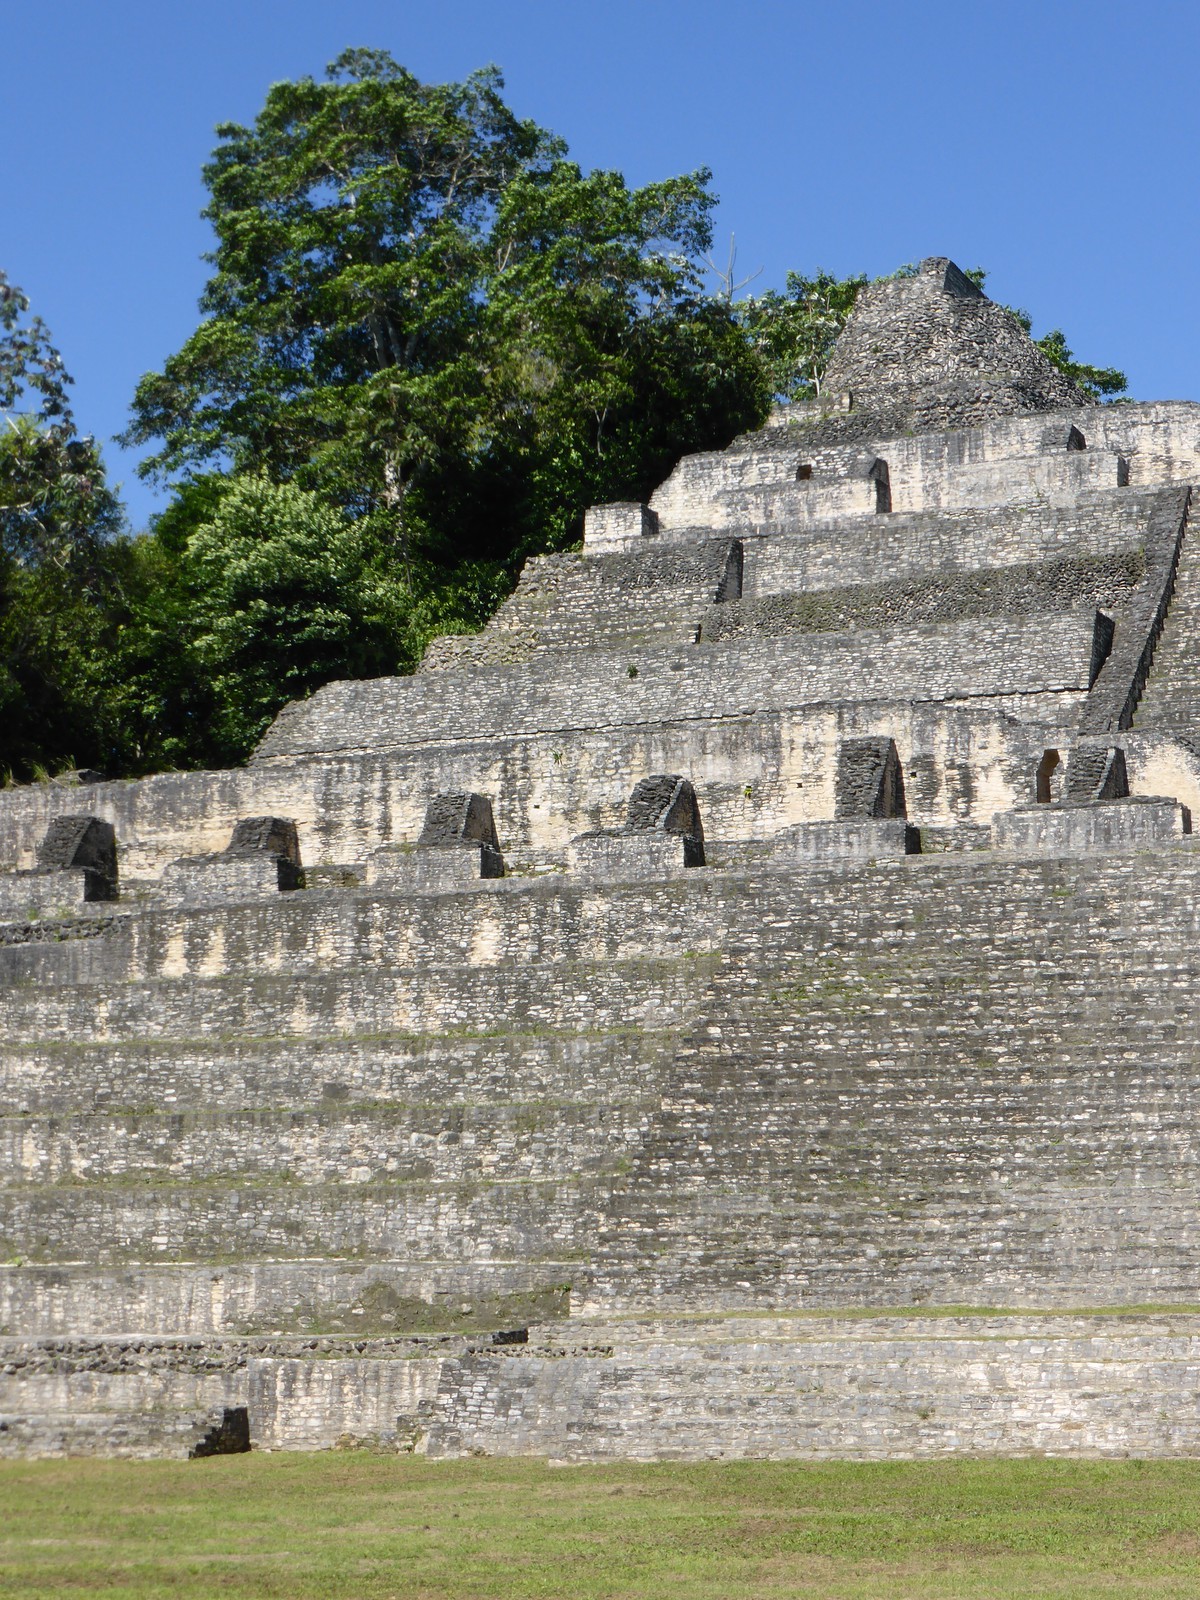 Caana, the main pyramid at Caracol, is 43m high